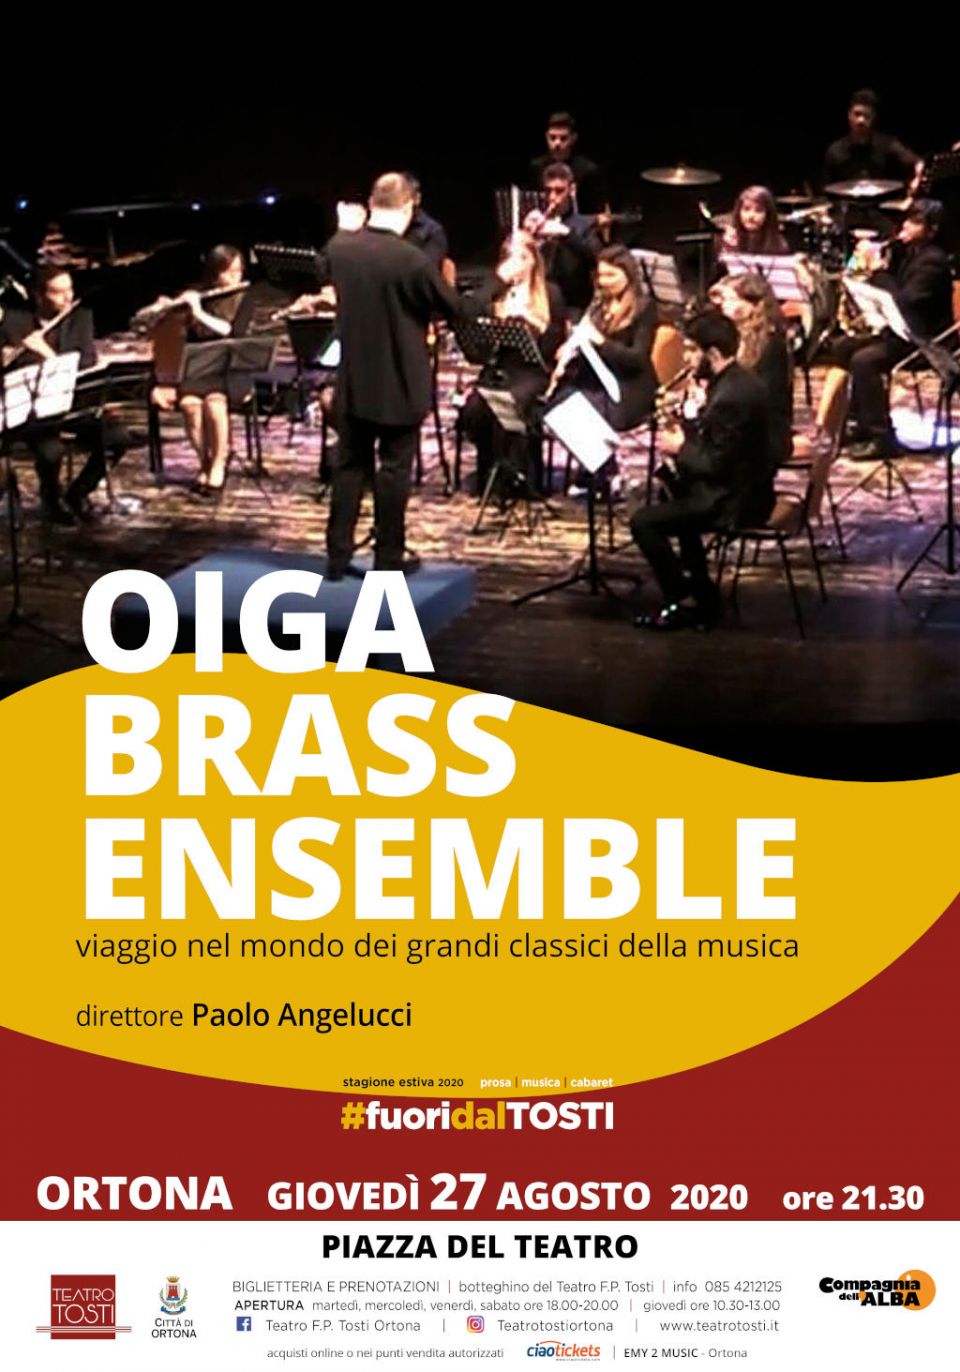 OIGA Brass Ensemble in concerto per la rassegna “Fuori dal Tosti”